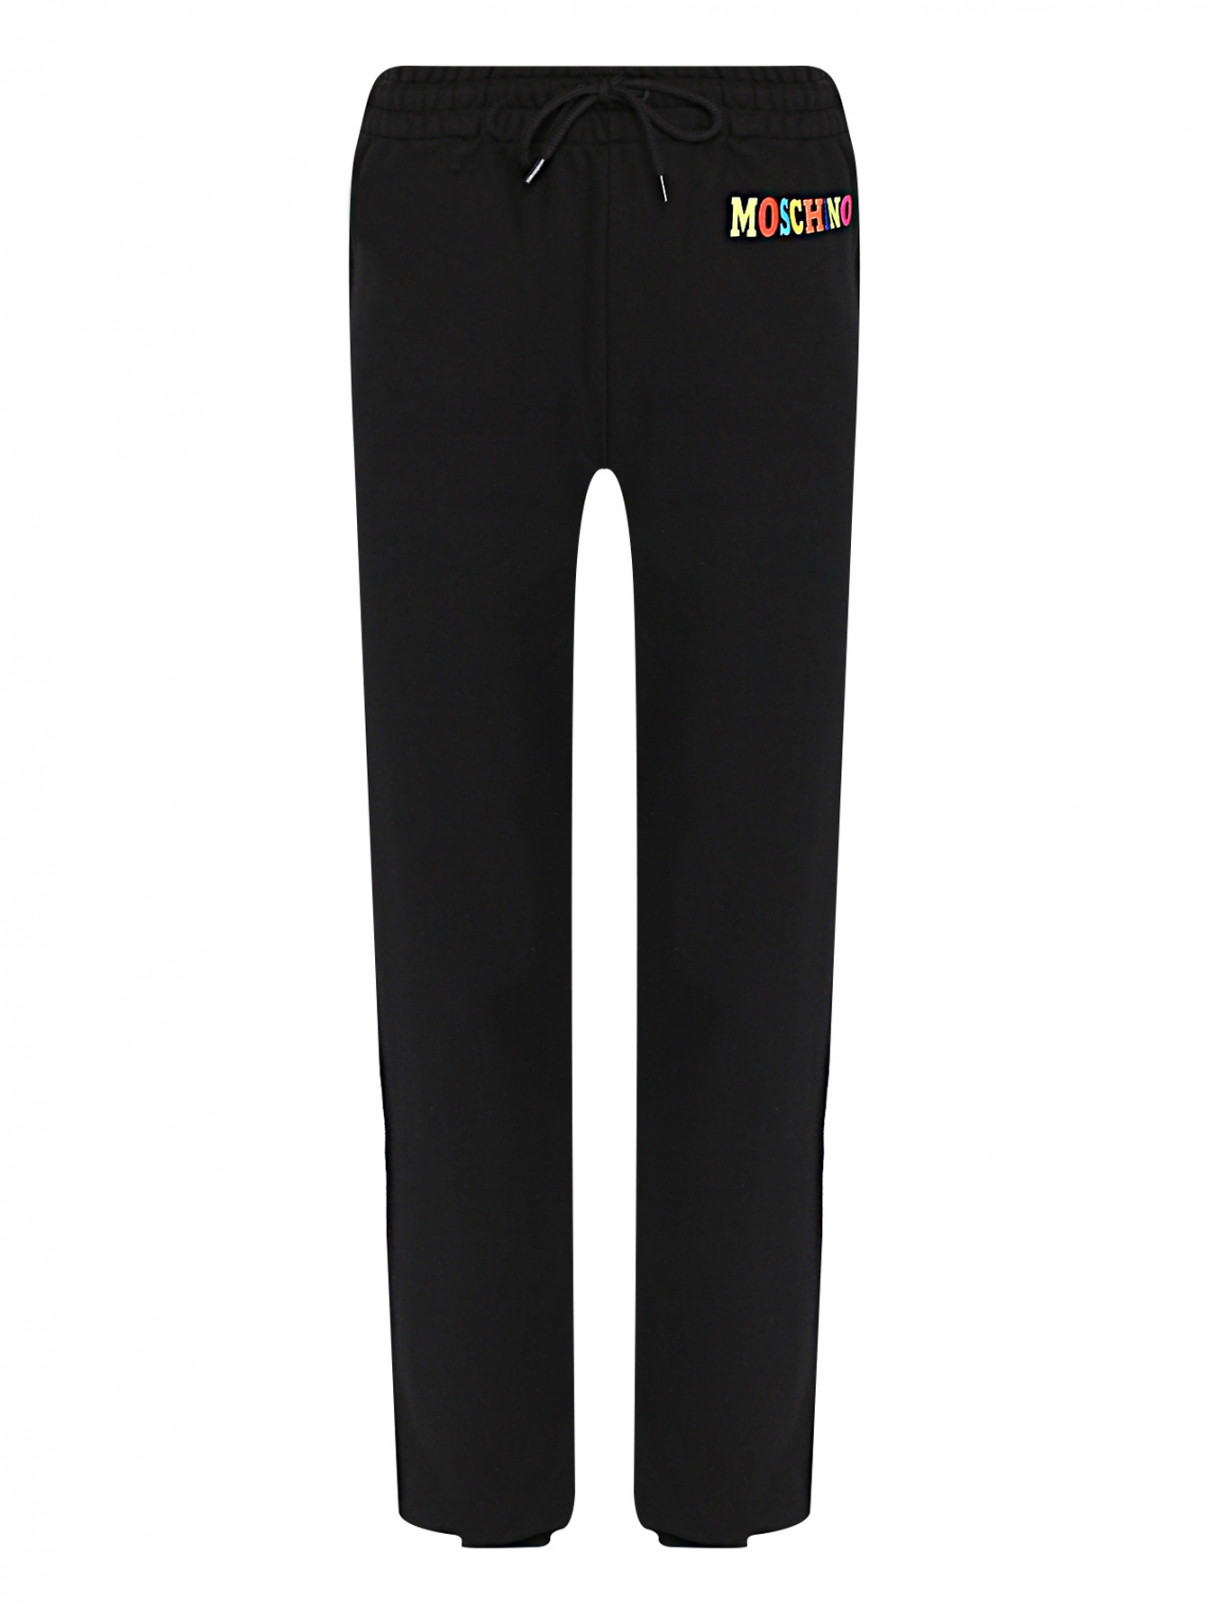 Трикотажные брюки с принтом Moschino  –  Общий вид  – Цвет:  Черный